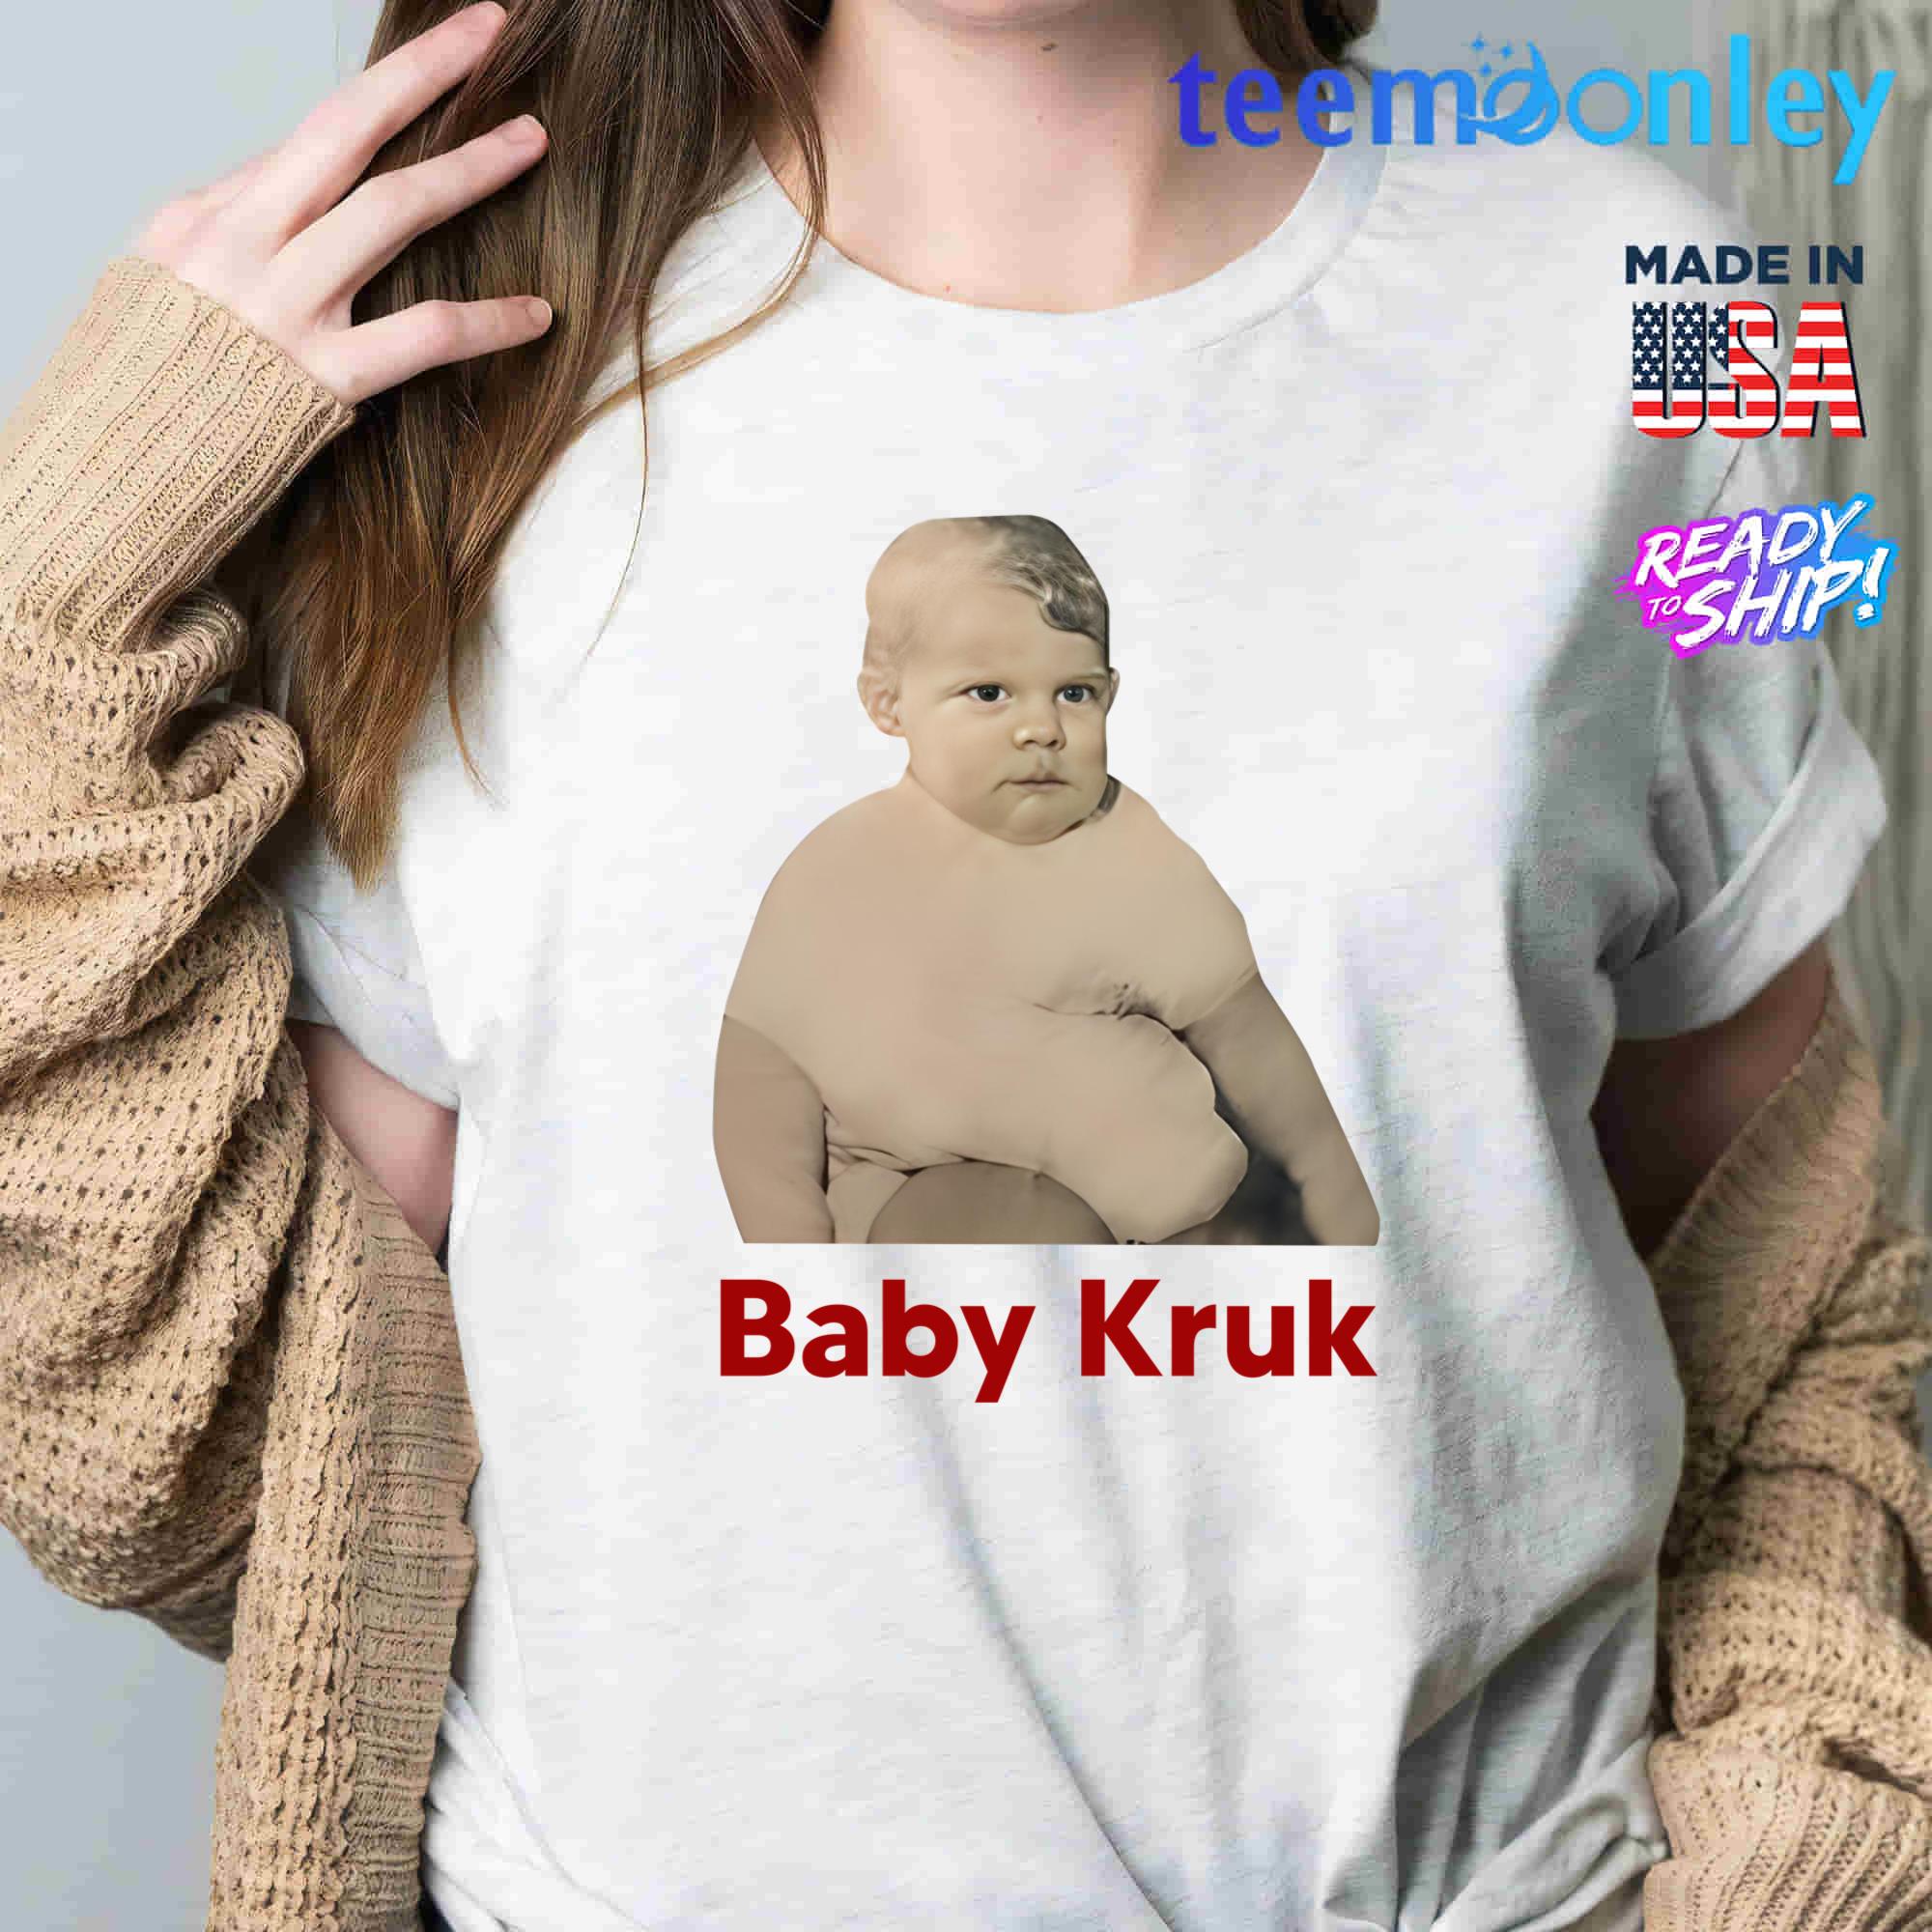 Baby Kruk T-shirt 